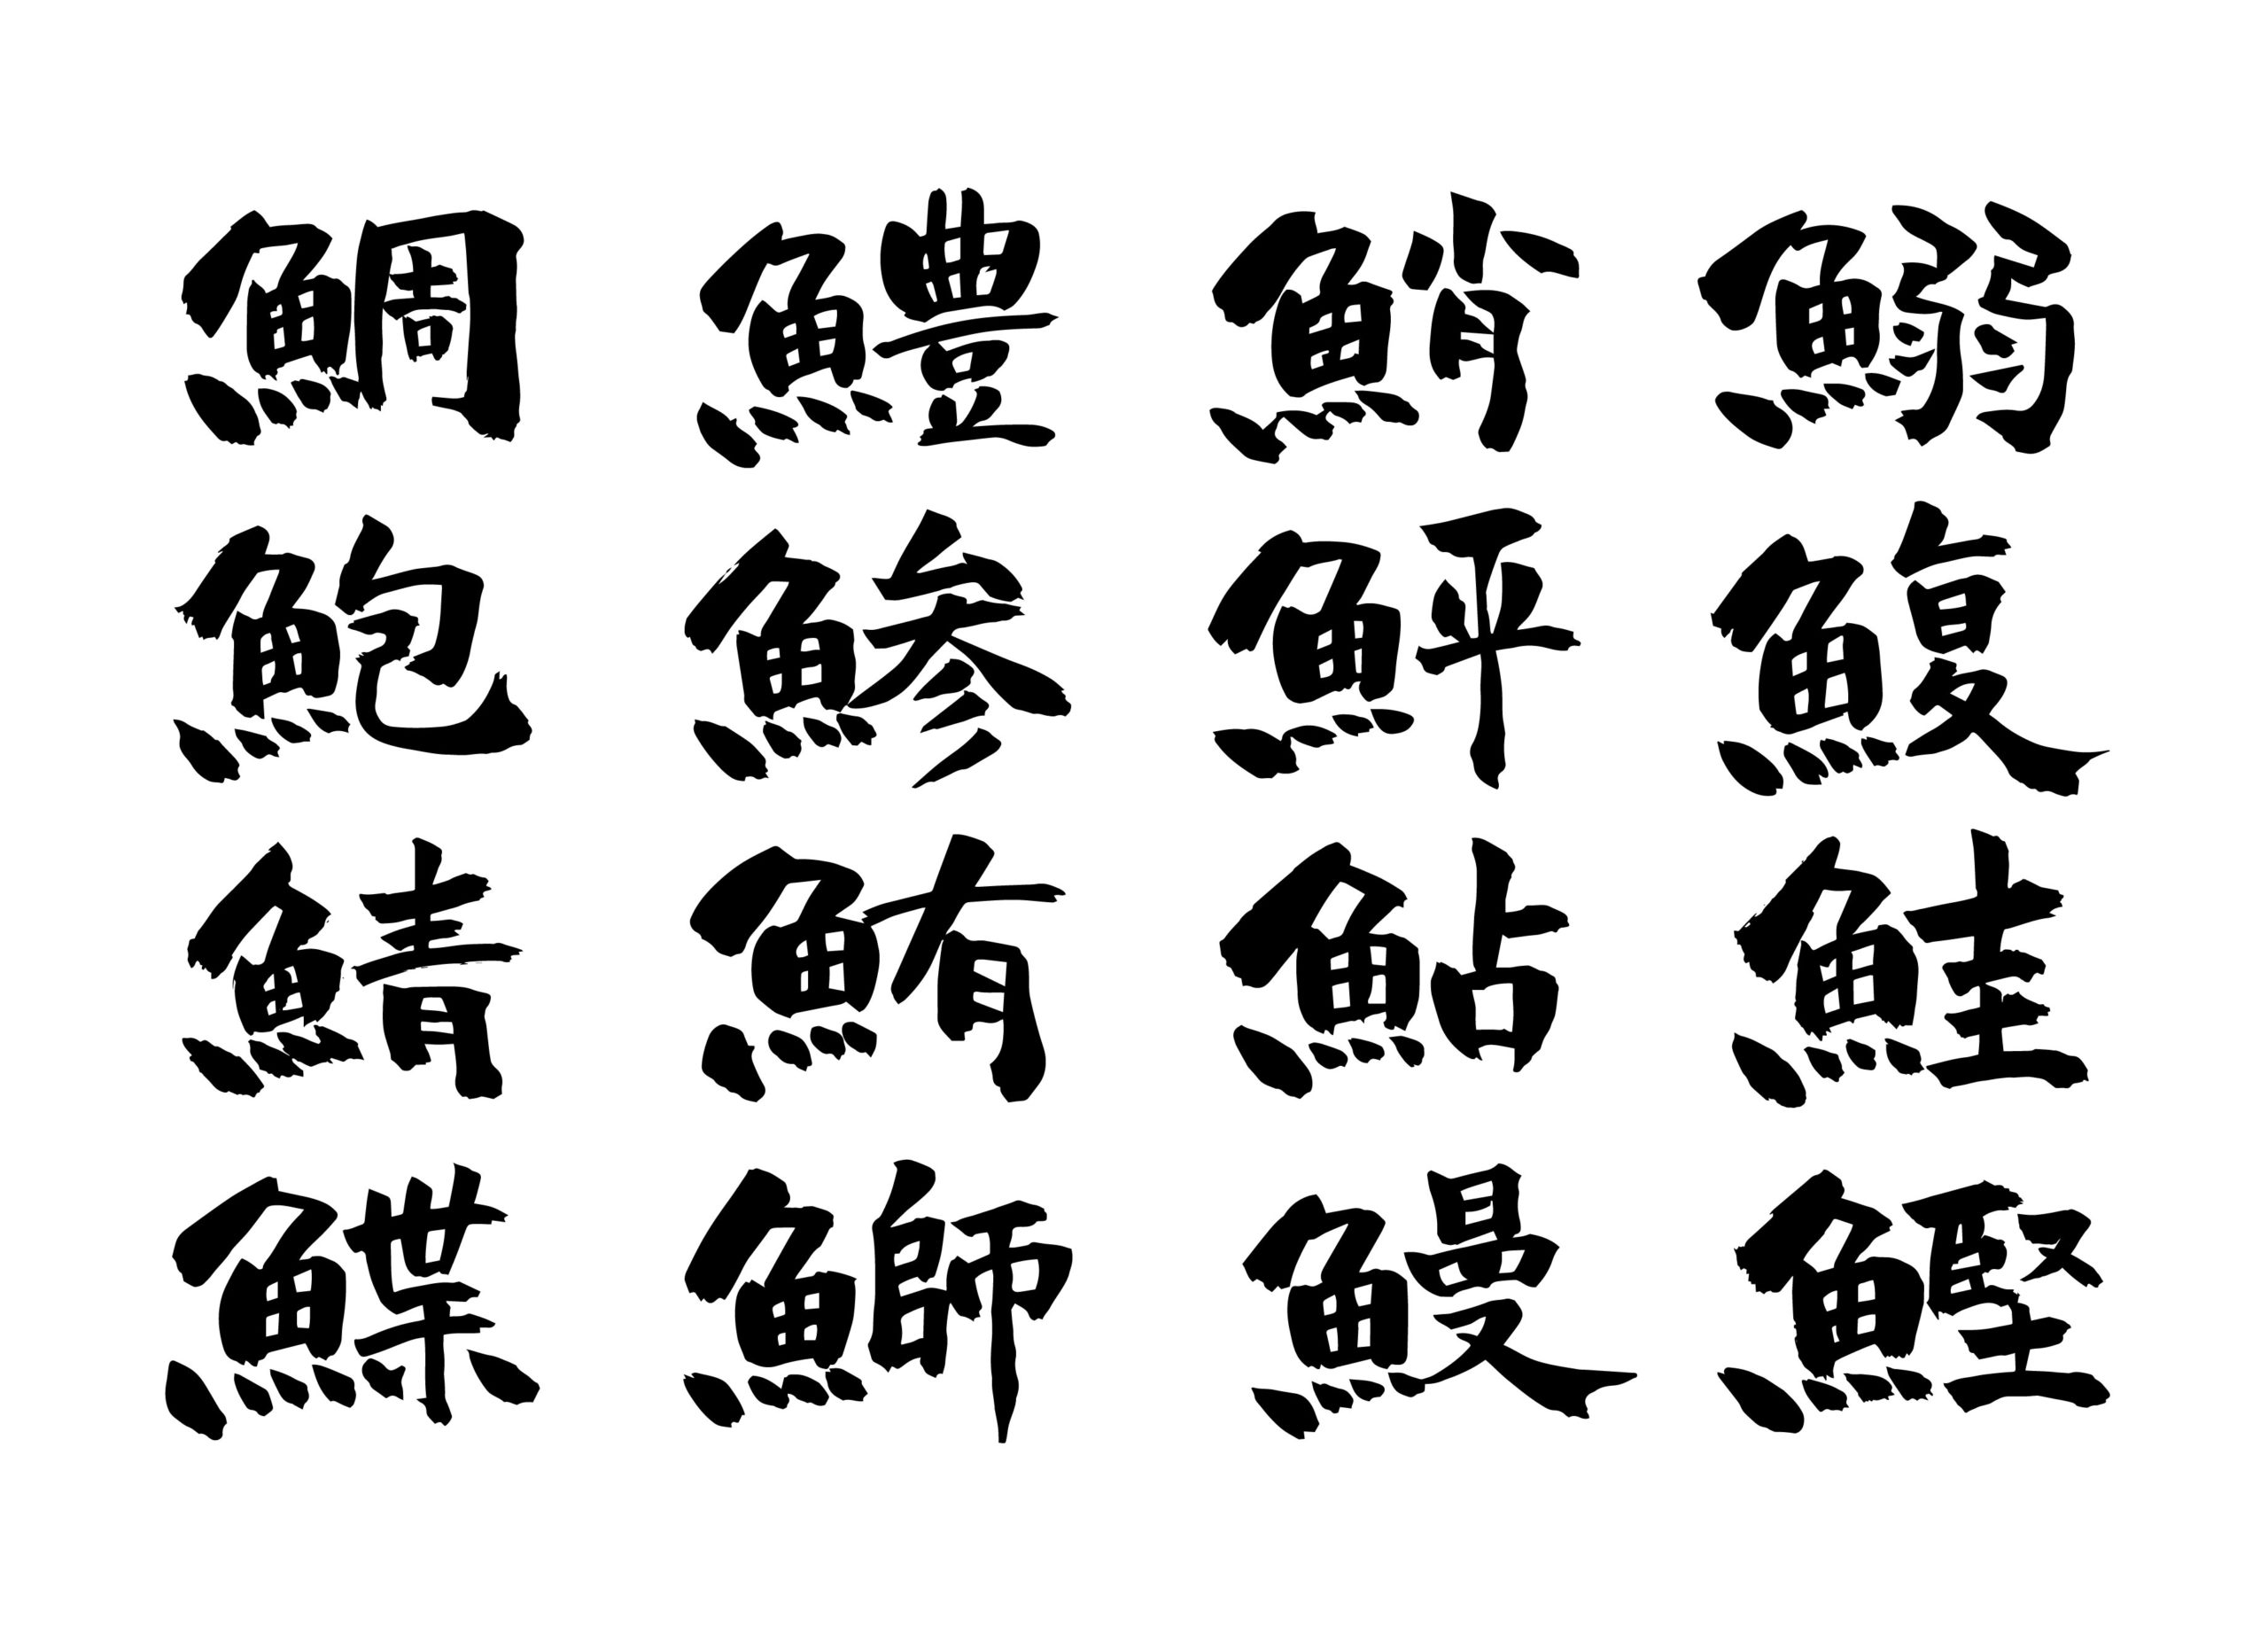 魚の漢字と由来一覧 まず覚えるべき頻出漢字まとめ 選